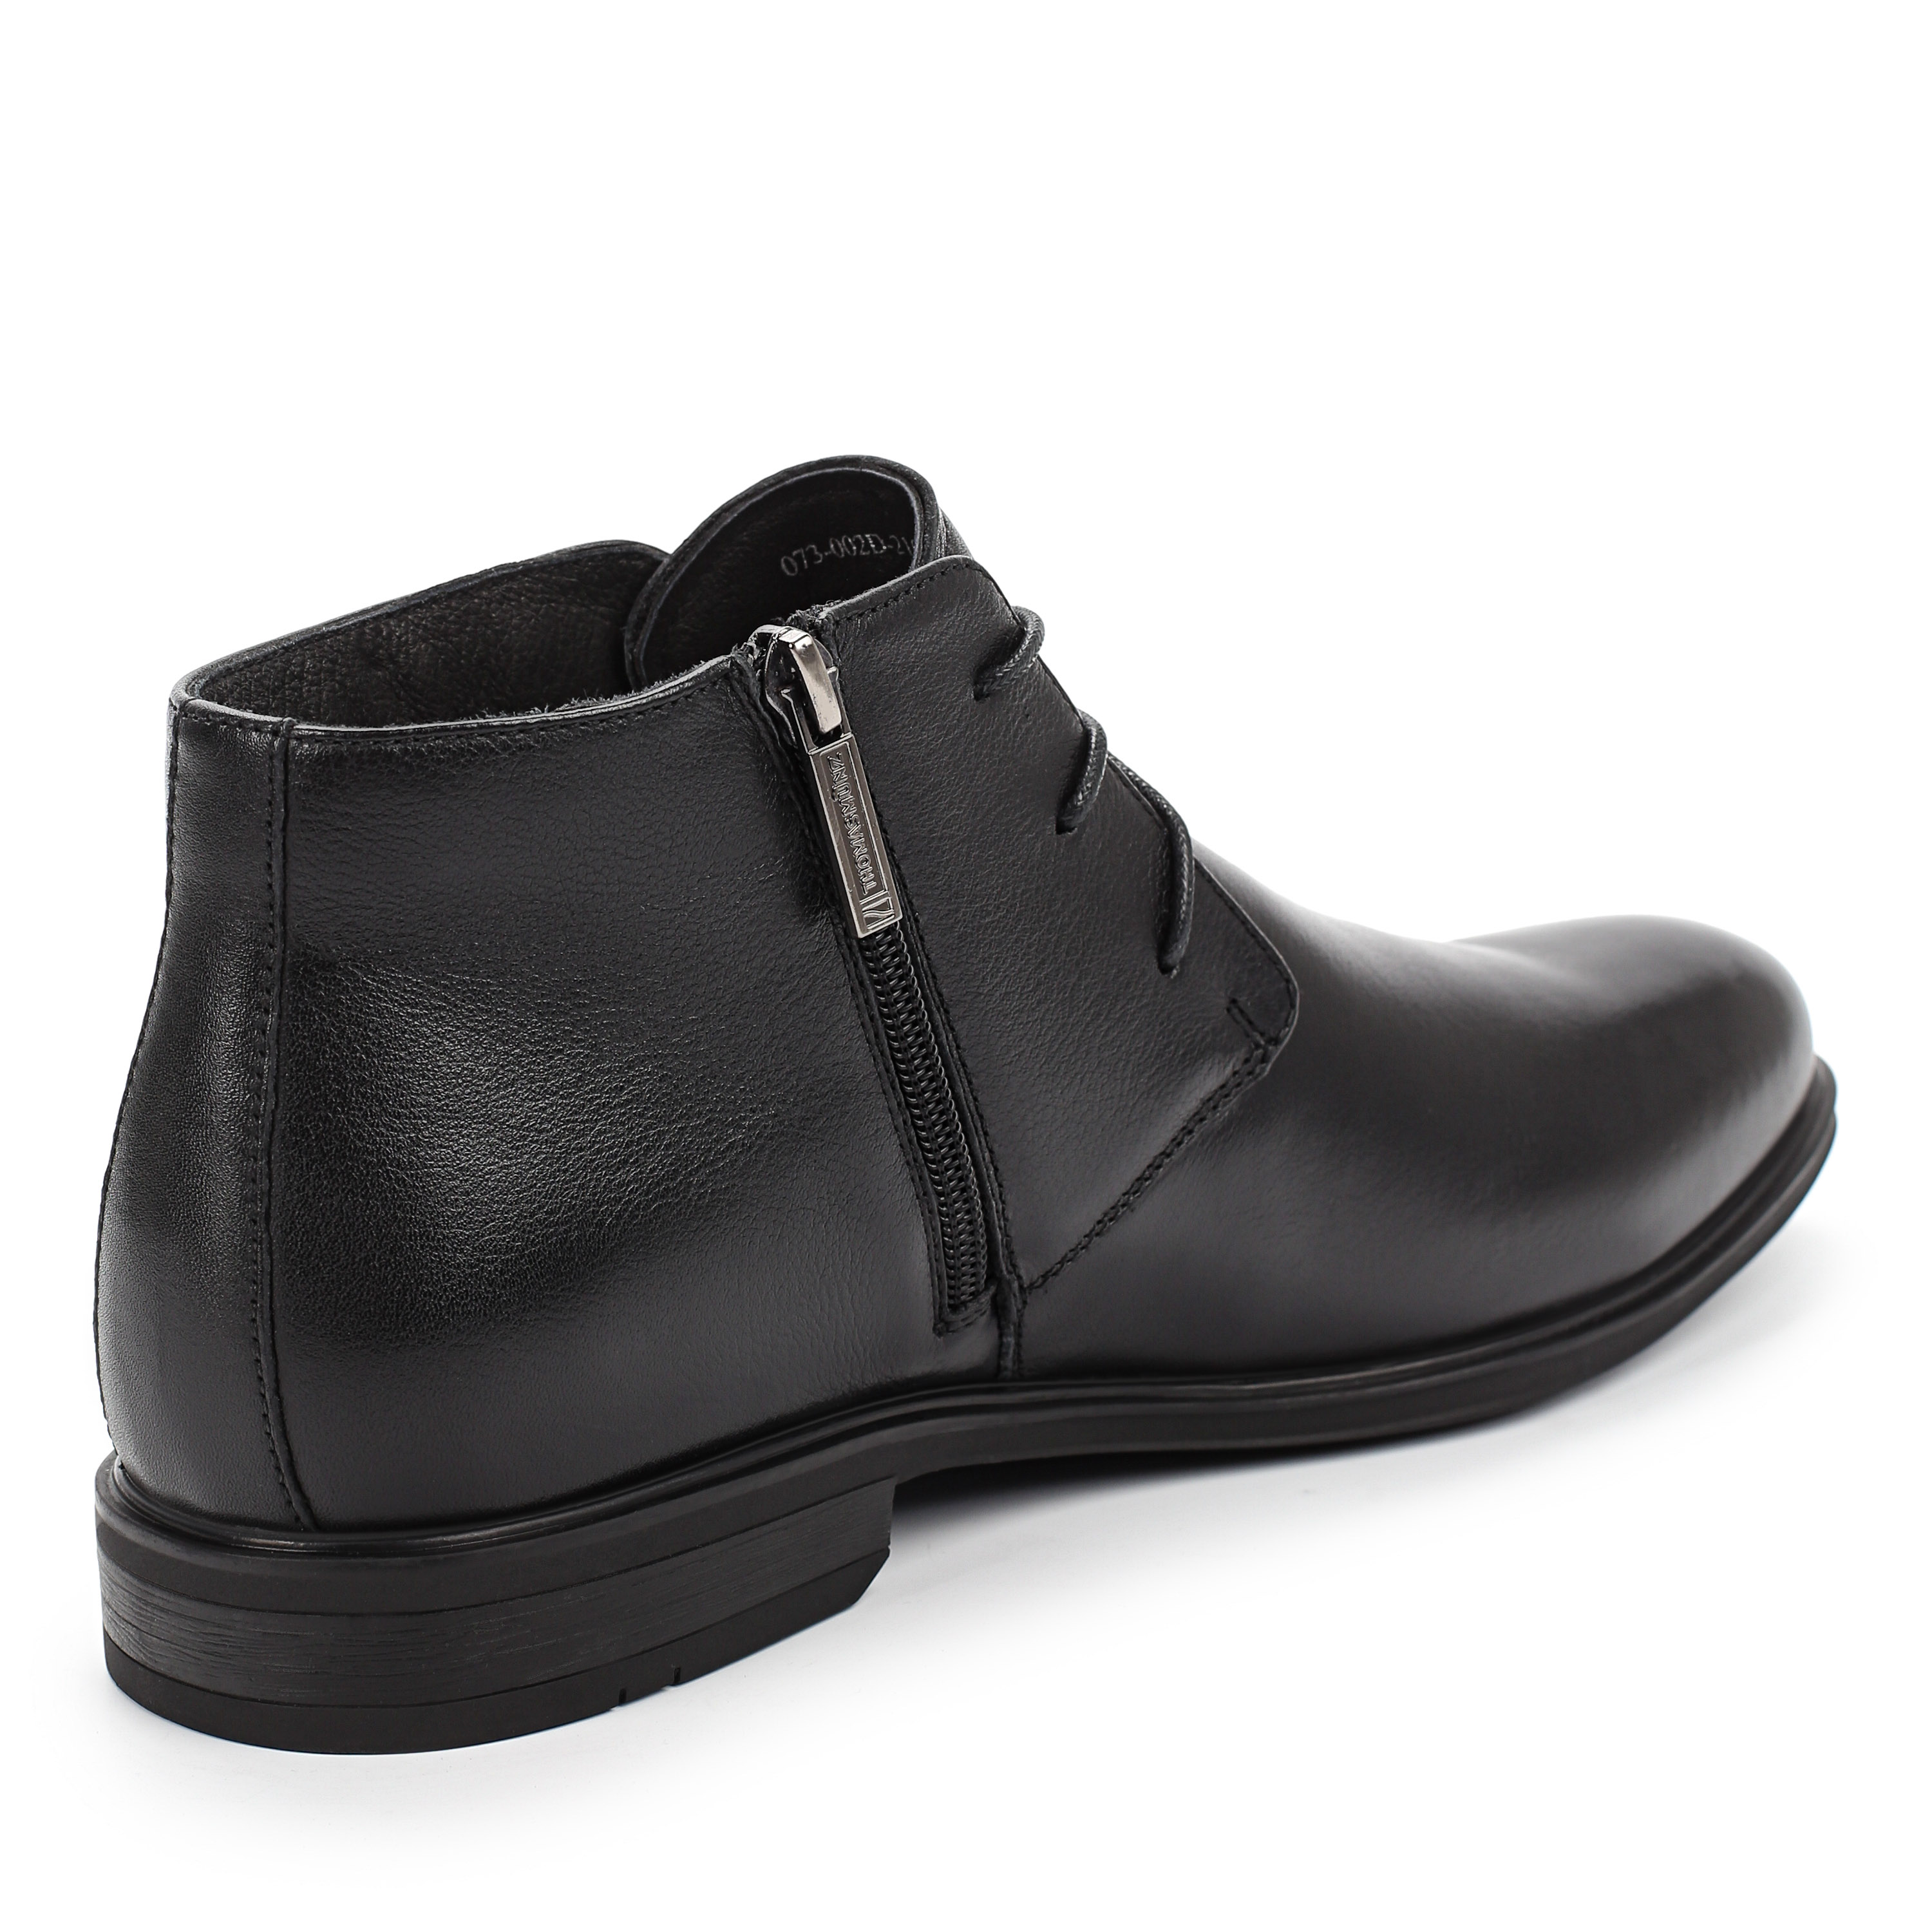 Ботинки Thomas Munz 073-002D-2102 073-002D-2102, цвет черный, размер 45 дерби - фото 3